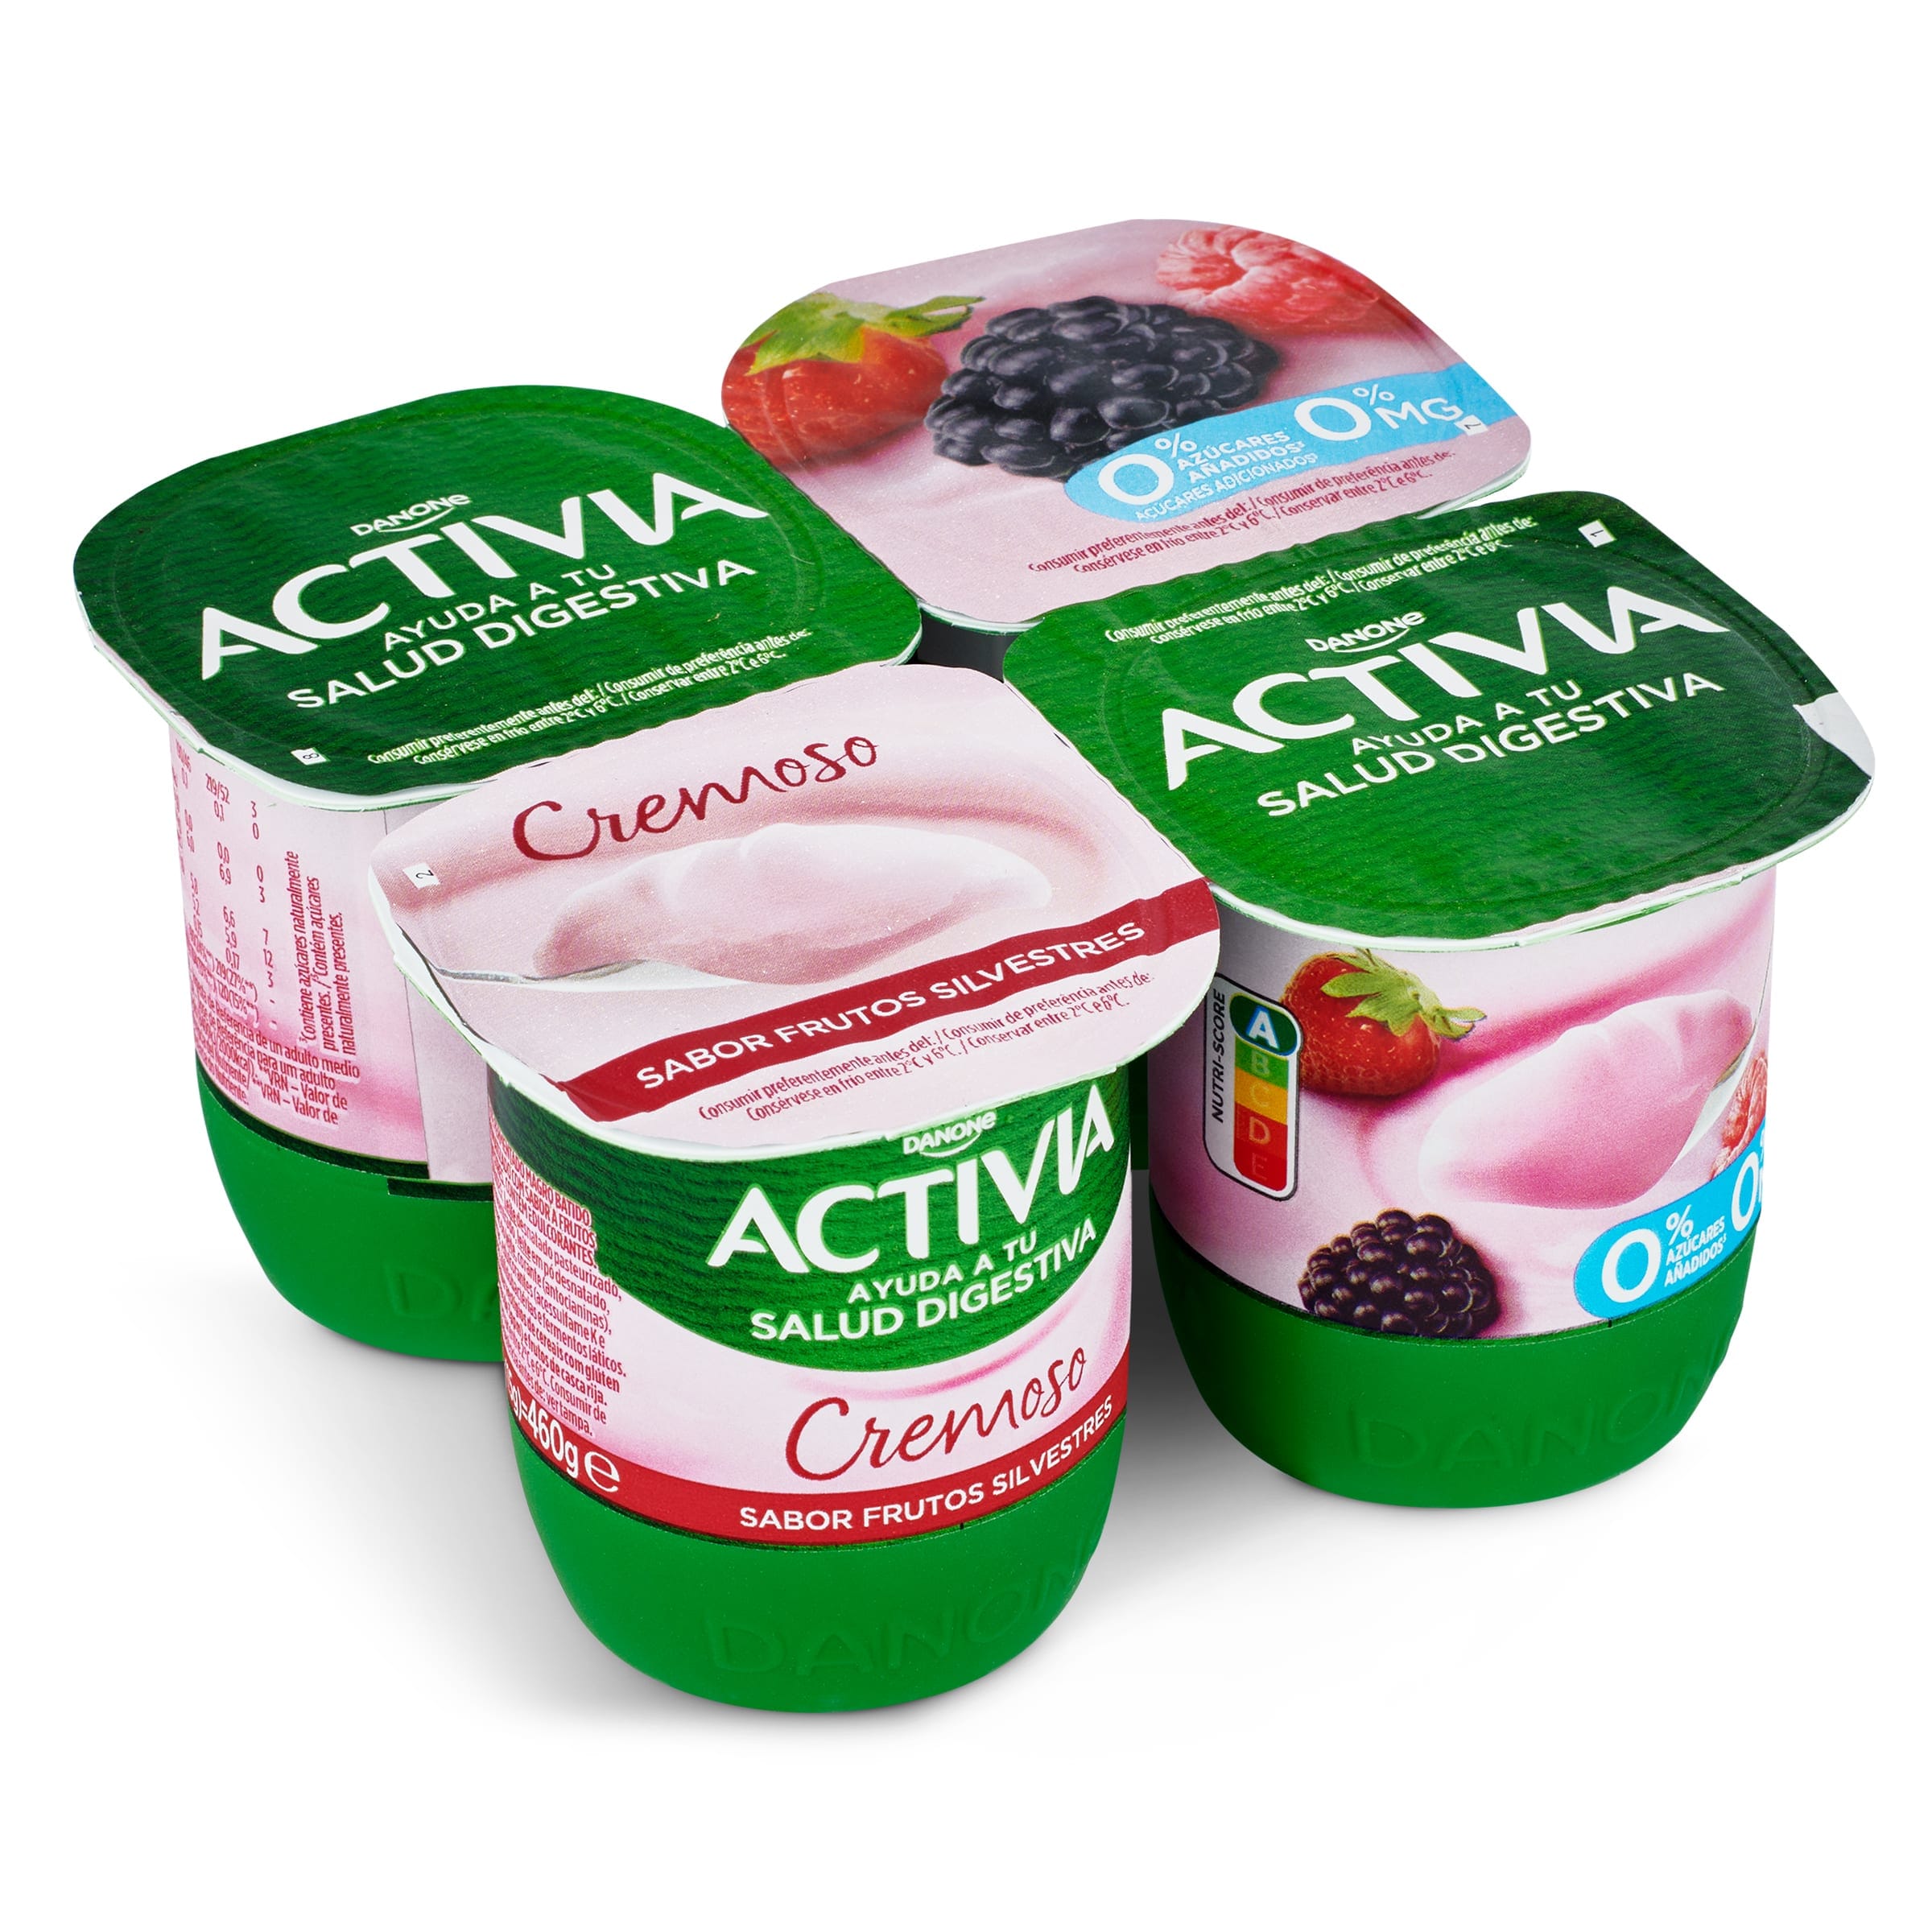 Bífidus desnatado sabor frutas silvestres Activia pack 4 x 115 g -  Supermercados DIA